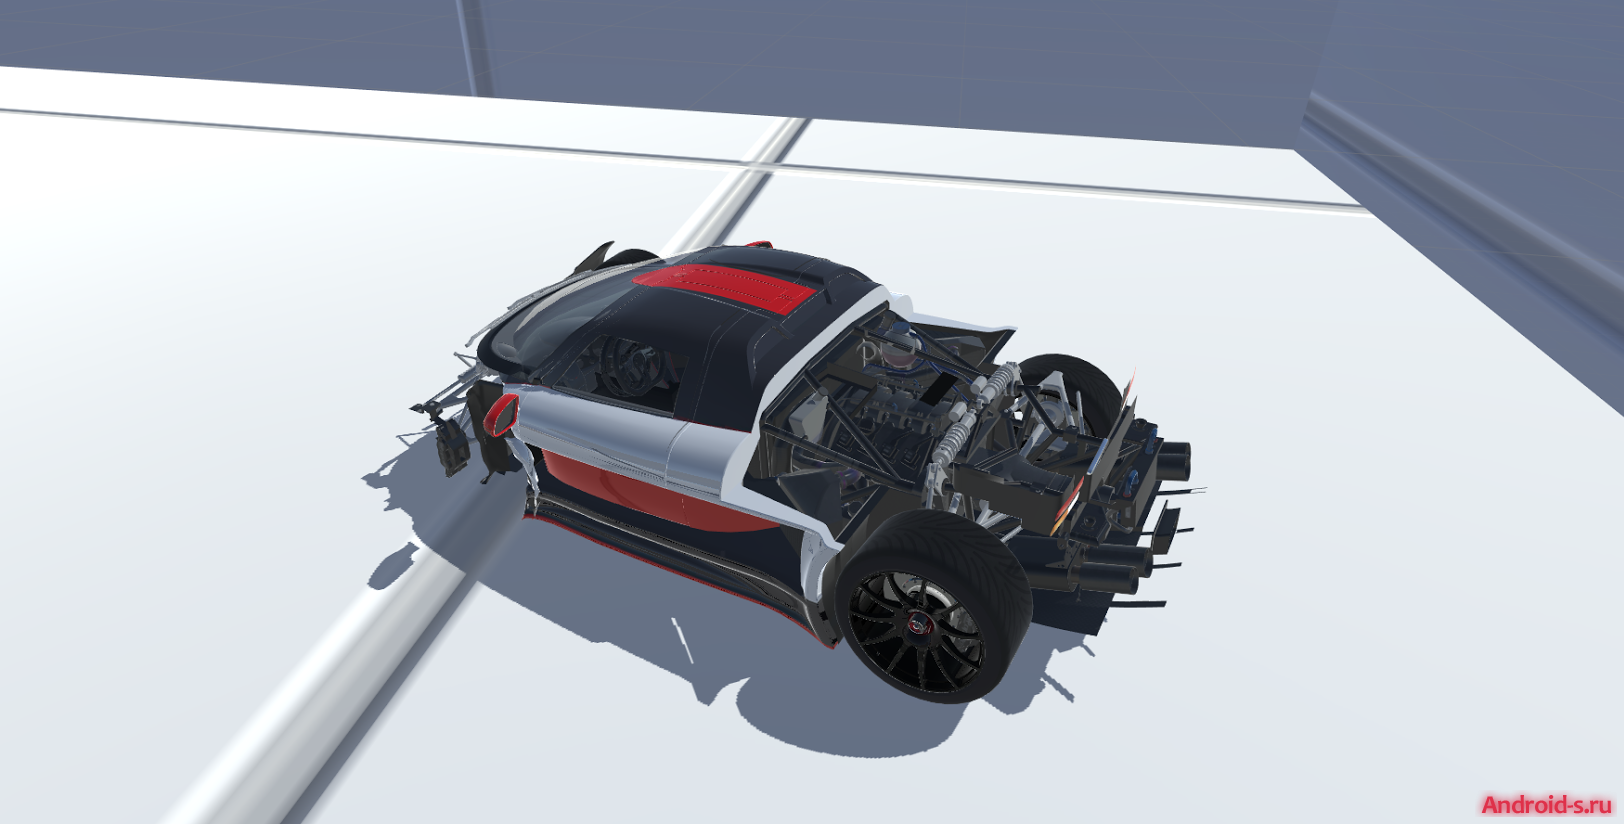 Deforming crash 2. Beam de 2.0 car crash Simulator. Мод на симулятор аварий. 2d симулятор реалистичного повреждения машин. 3d ДТП моделирование.